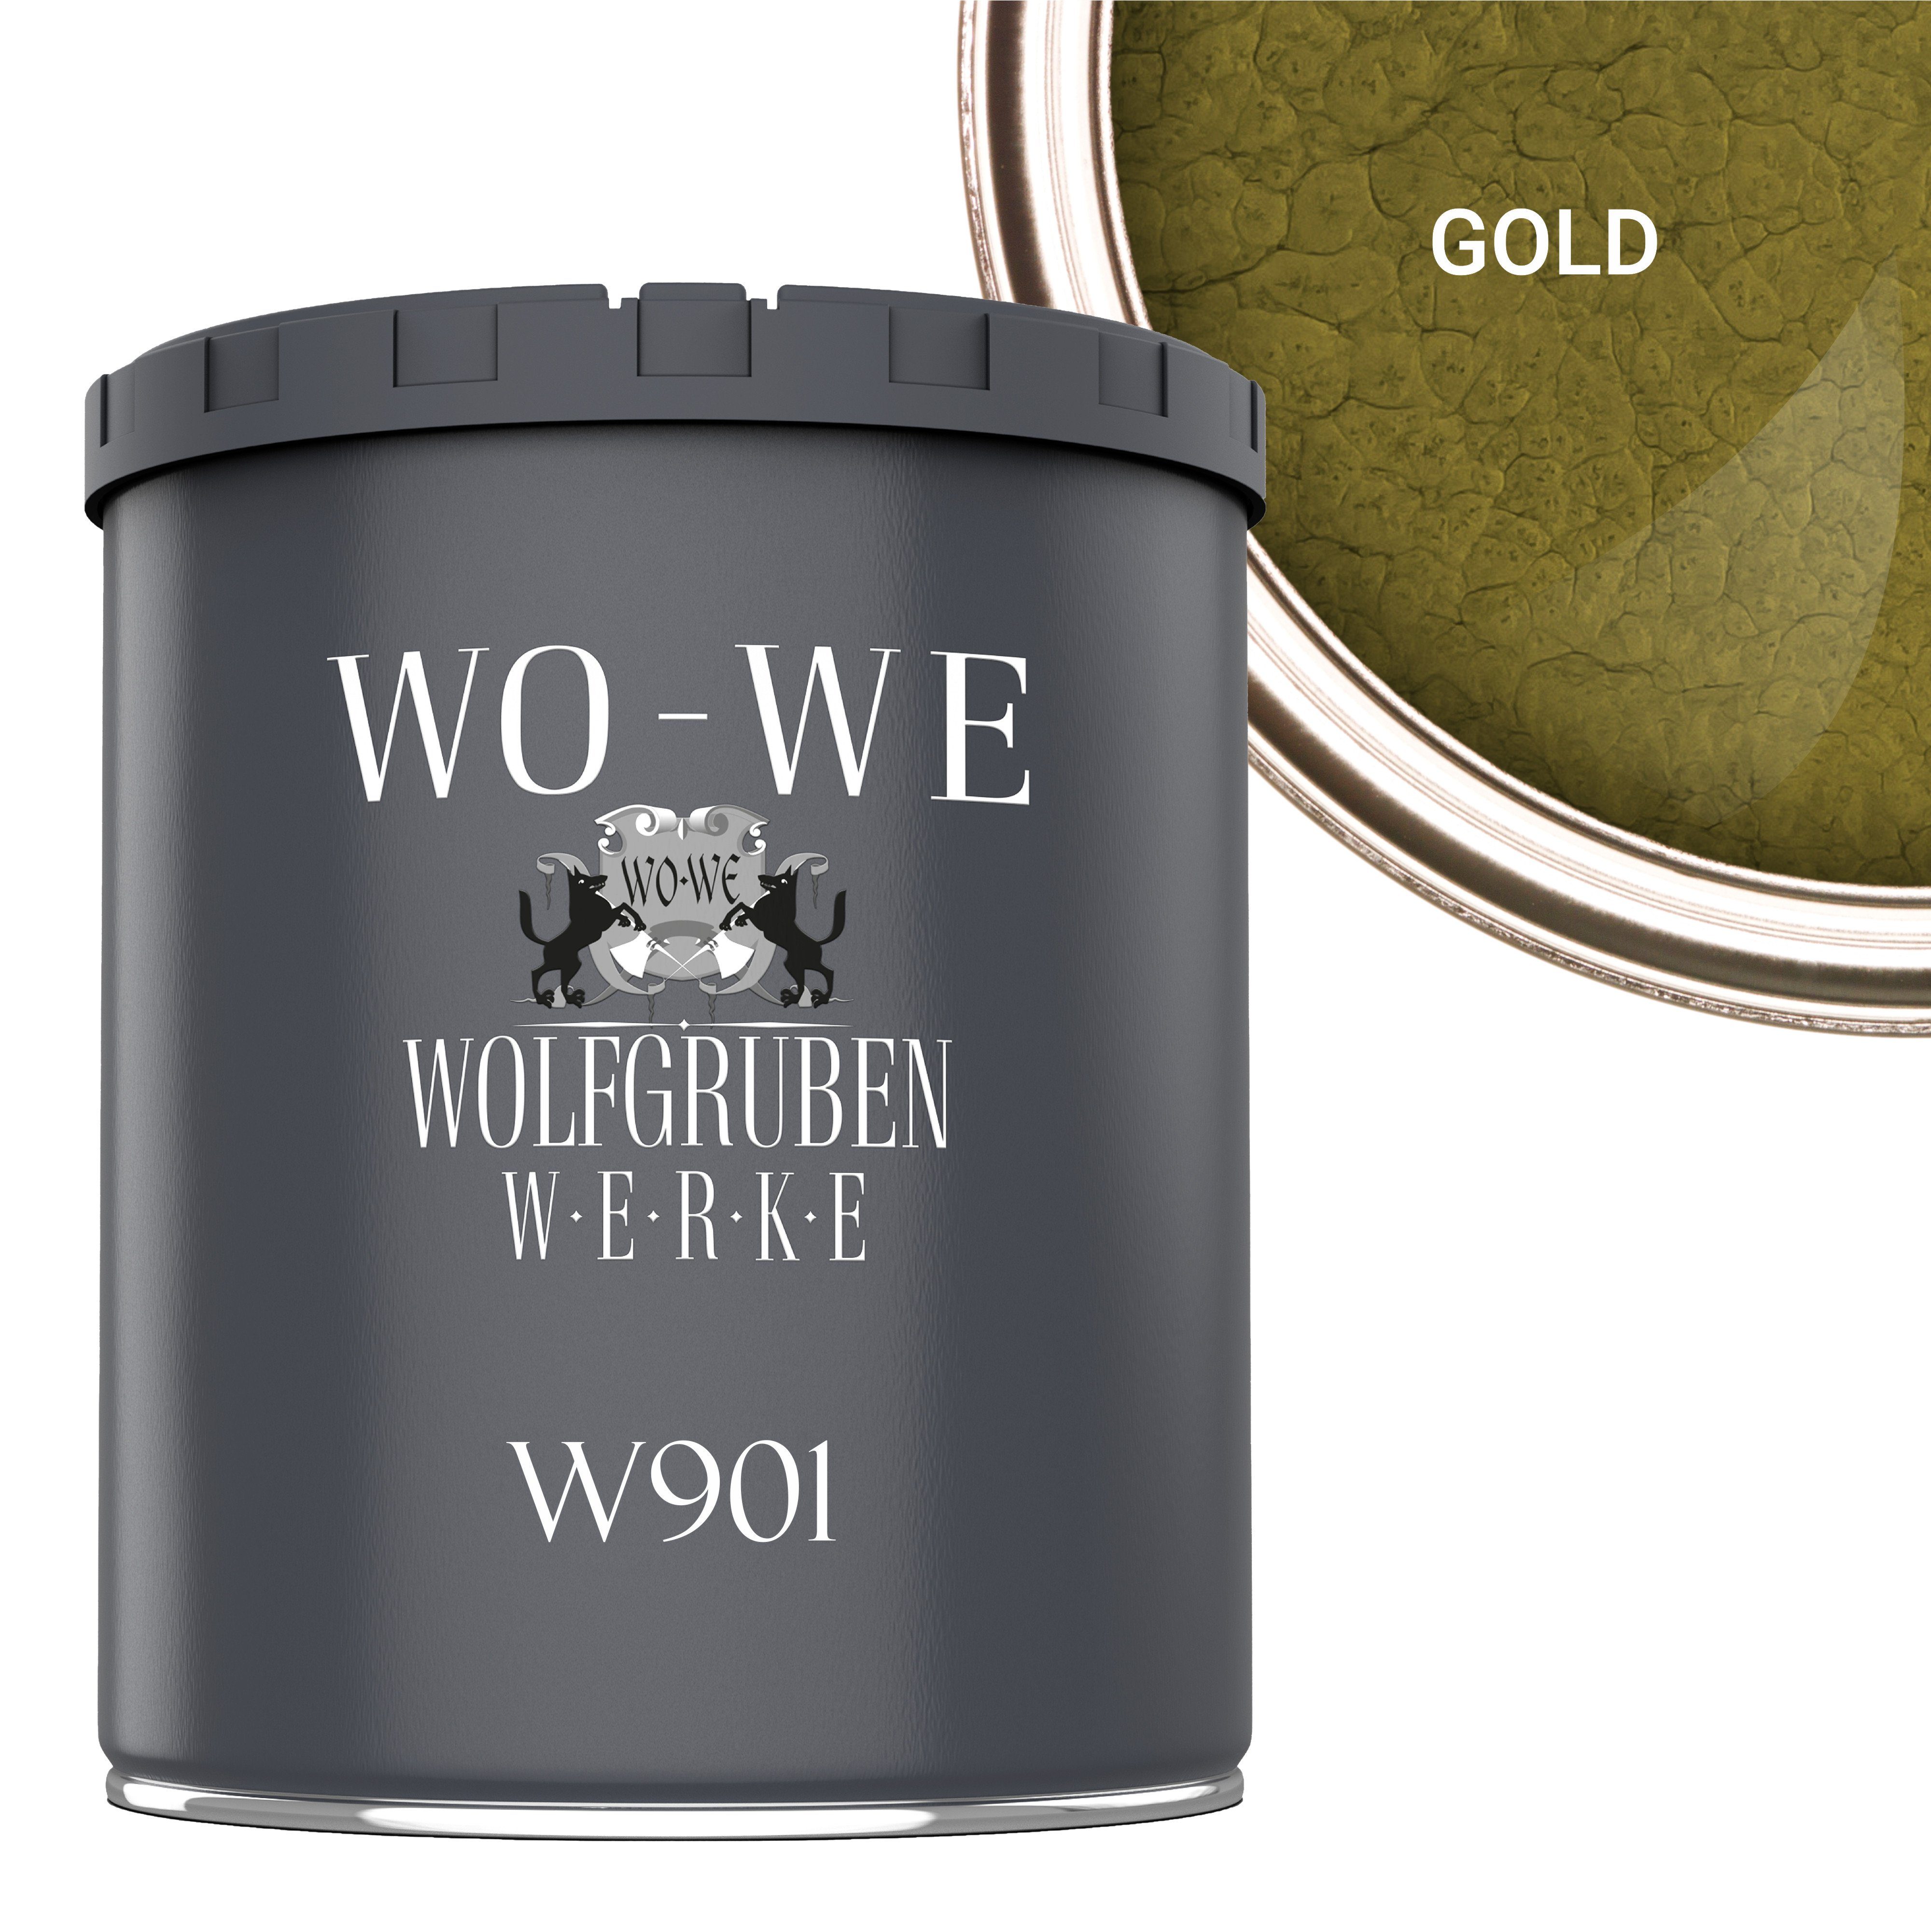 WO-WE Metallschutzlack Hammerschlaglack Hammerschlag Effektlack W901, 1-5L, Glänzend Gold